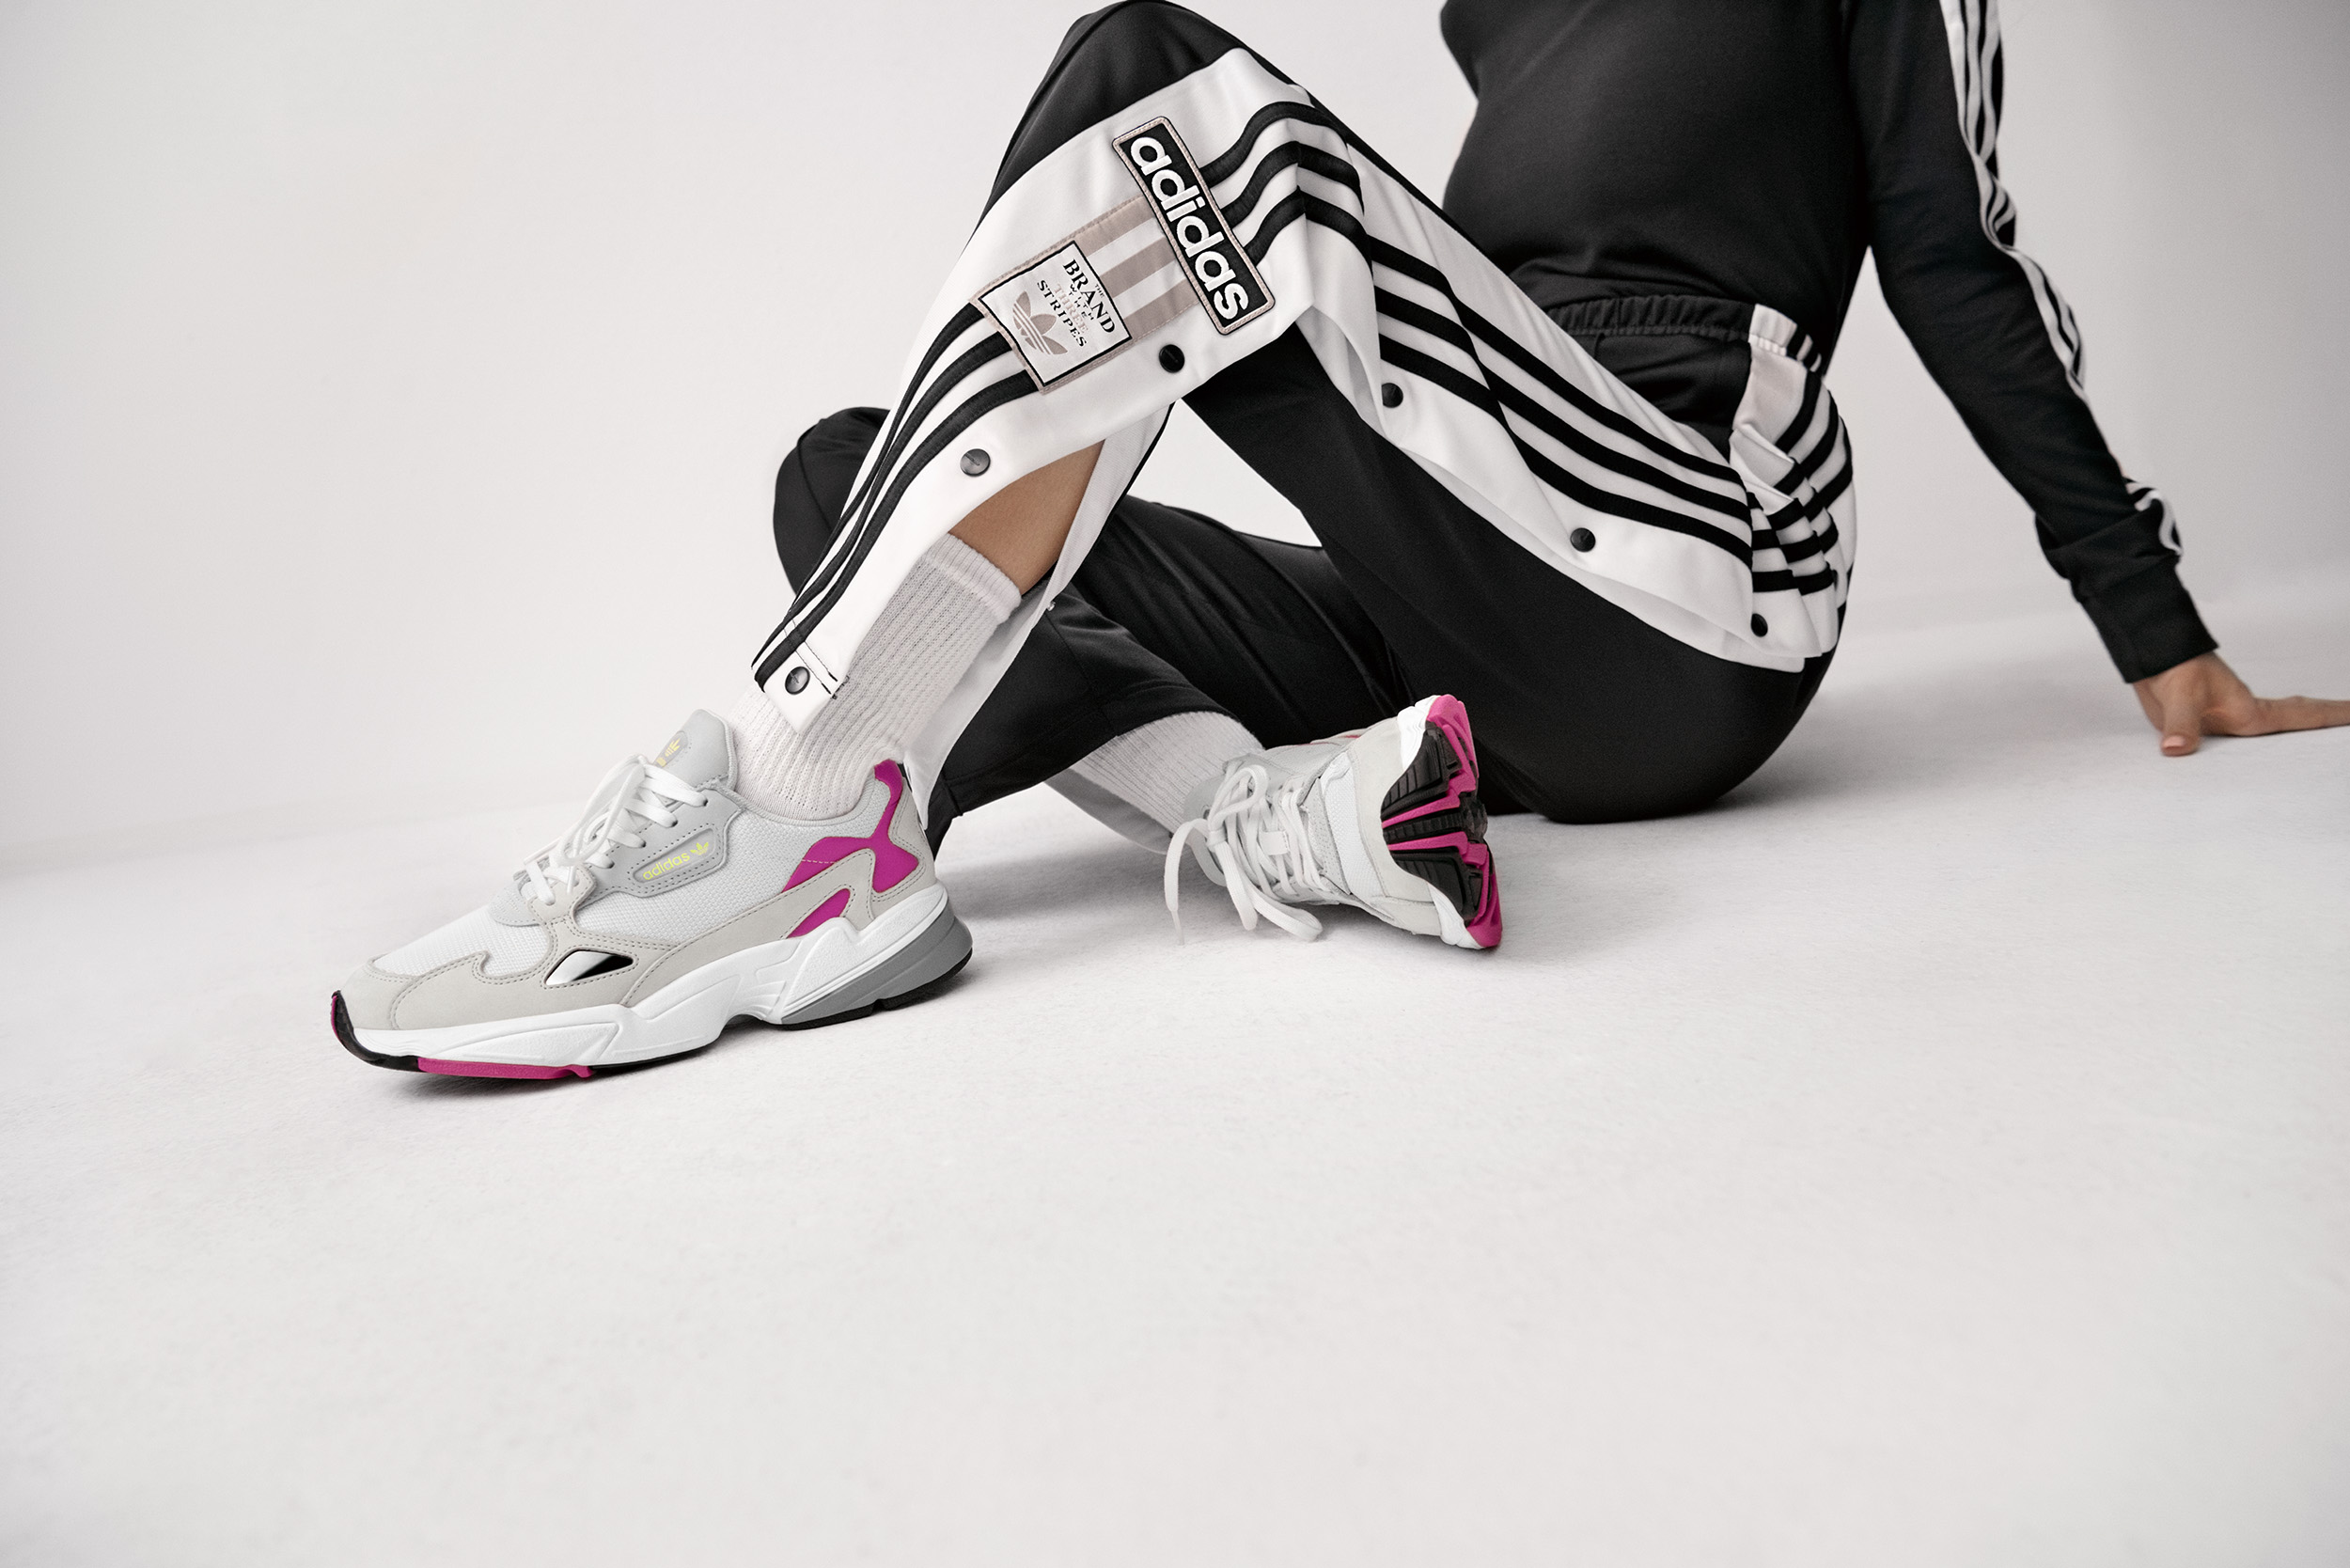 Adidas_Originals_FW18_Falcon_CM8537_Look_11_On_Foot_0066_12.jpg